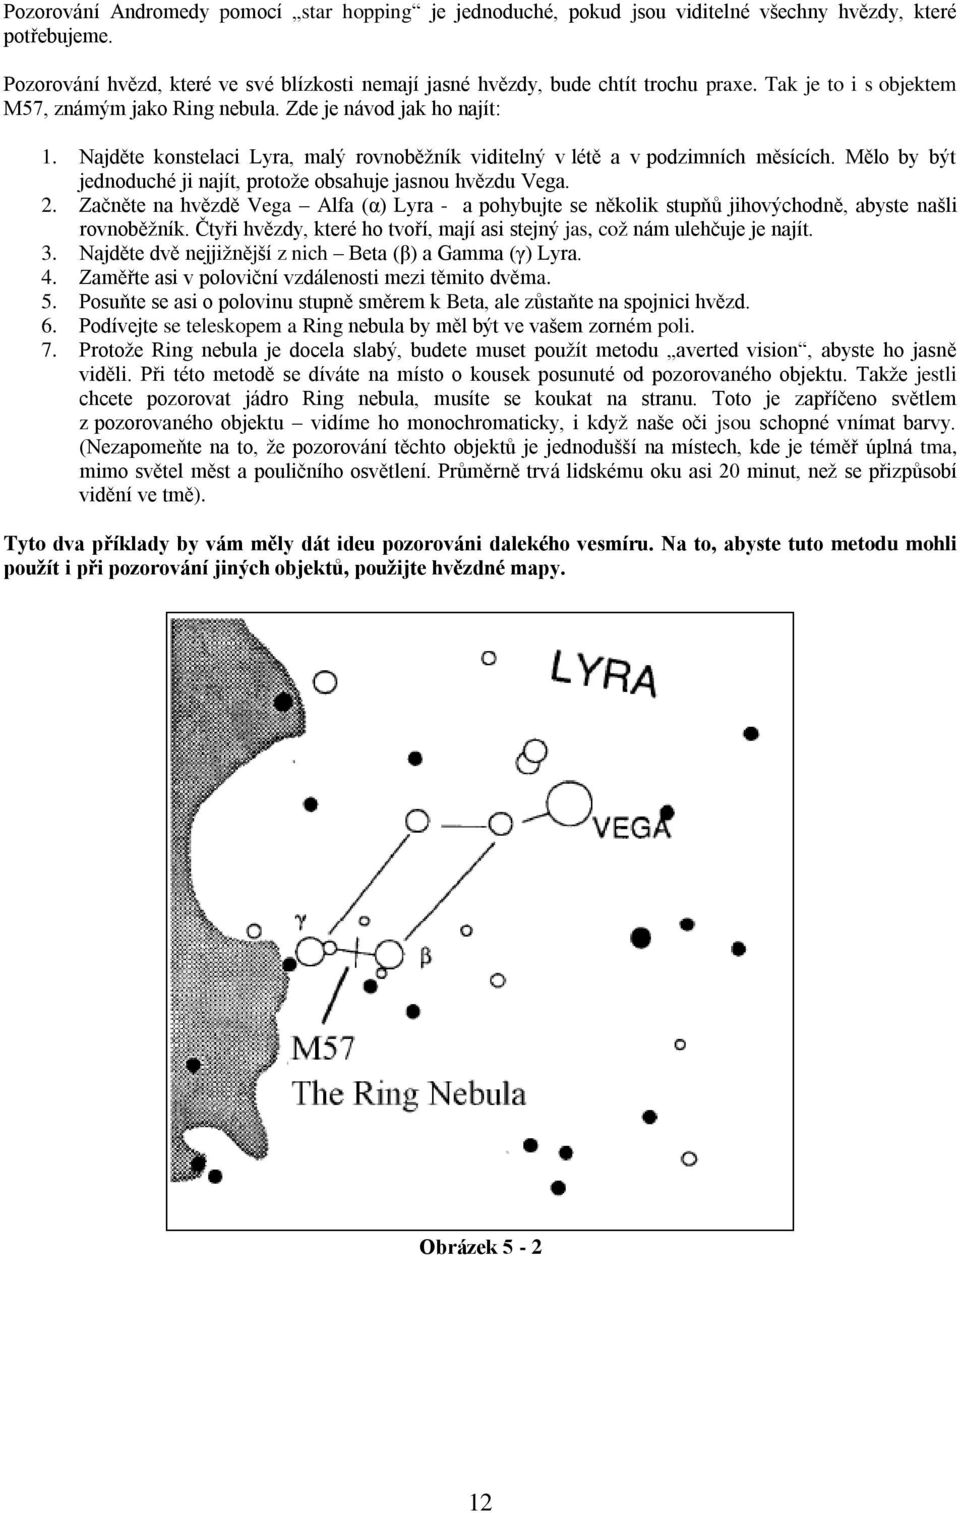 Mělo by být jednoduché ji najít, protože obsahuje jasnou hvězdu Vega. 2. Začněte na hvězdě Vega Alfa (α) Lyra - a pohybujte se několik stupňů jihovýchodně, abyste našli rovnoběžník.